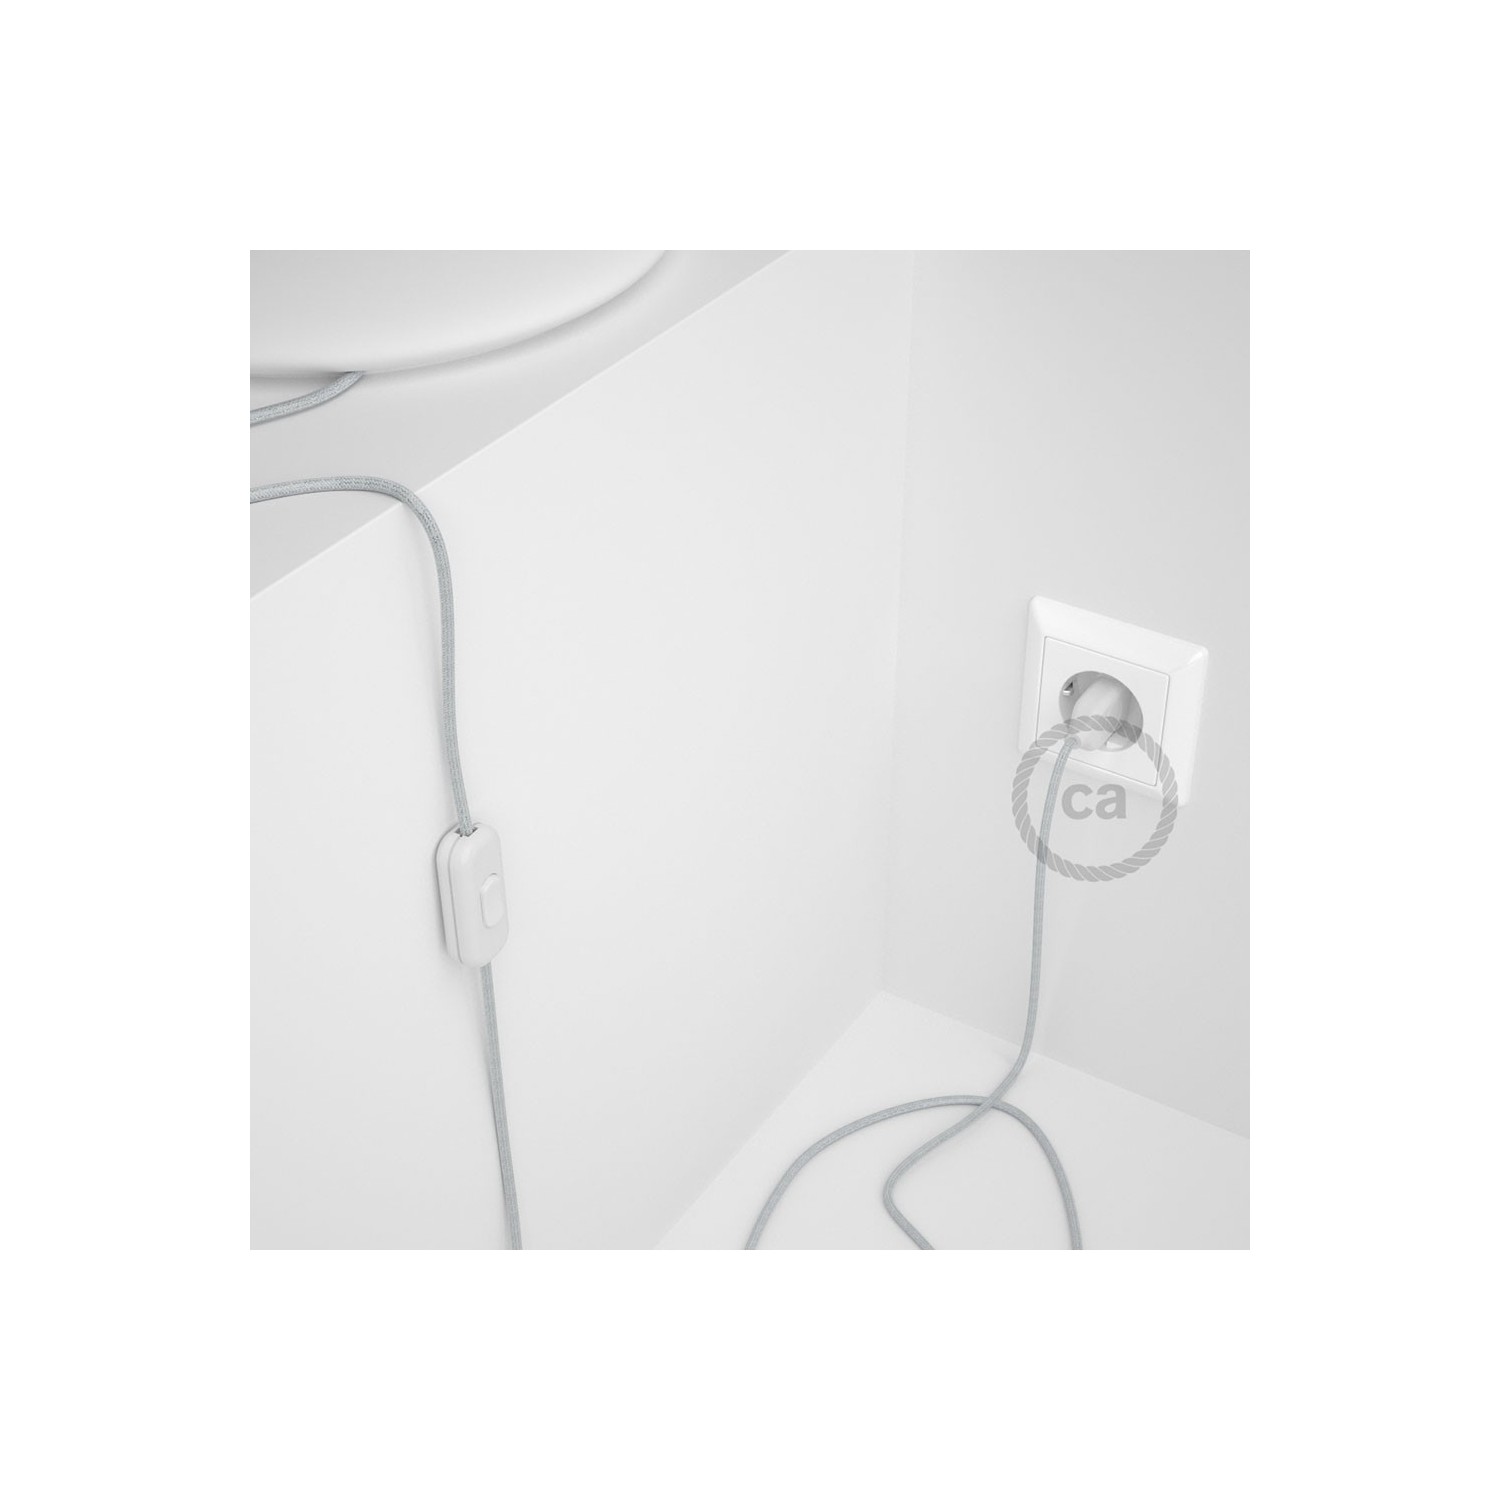 Cableado para lámpara, cable RL01 Efecto Seda Glitter Blanco 1,8m. Elige tu el color de la clavija y del interruptor!